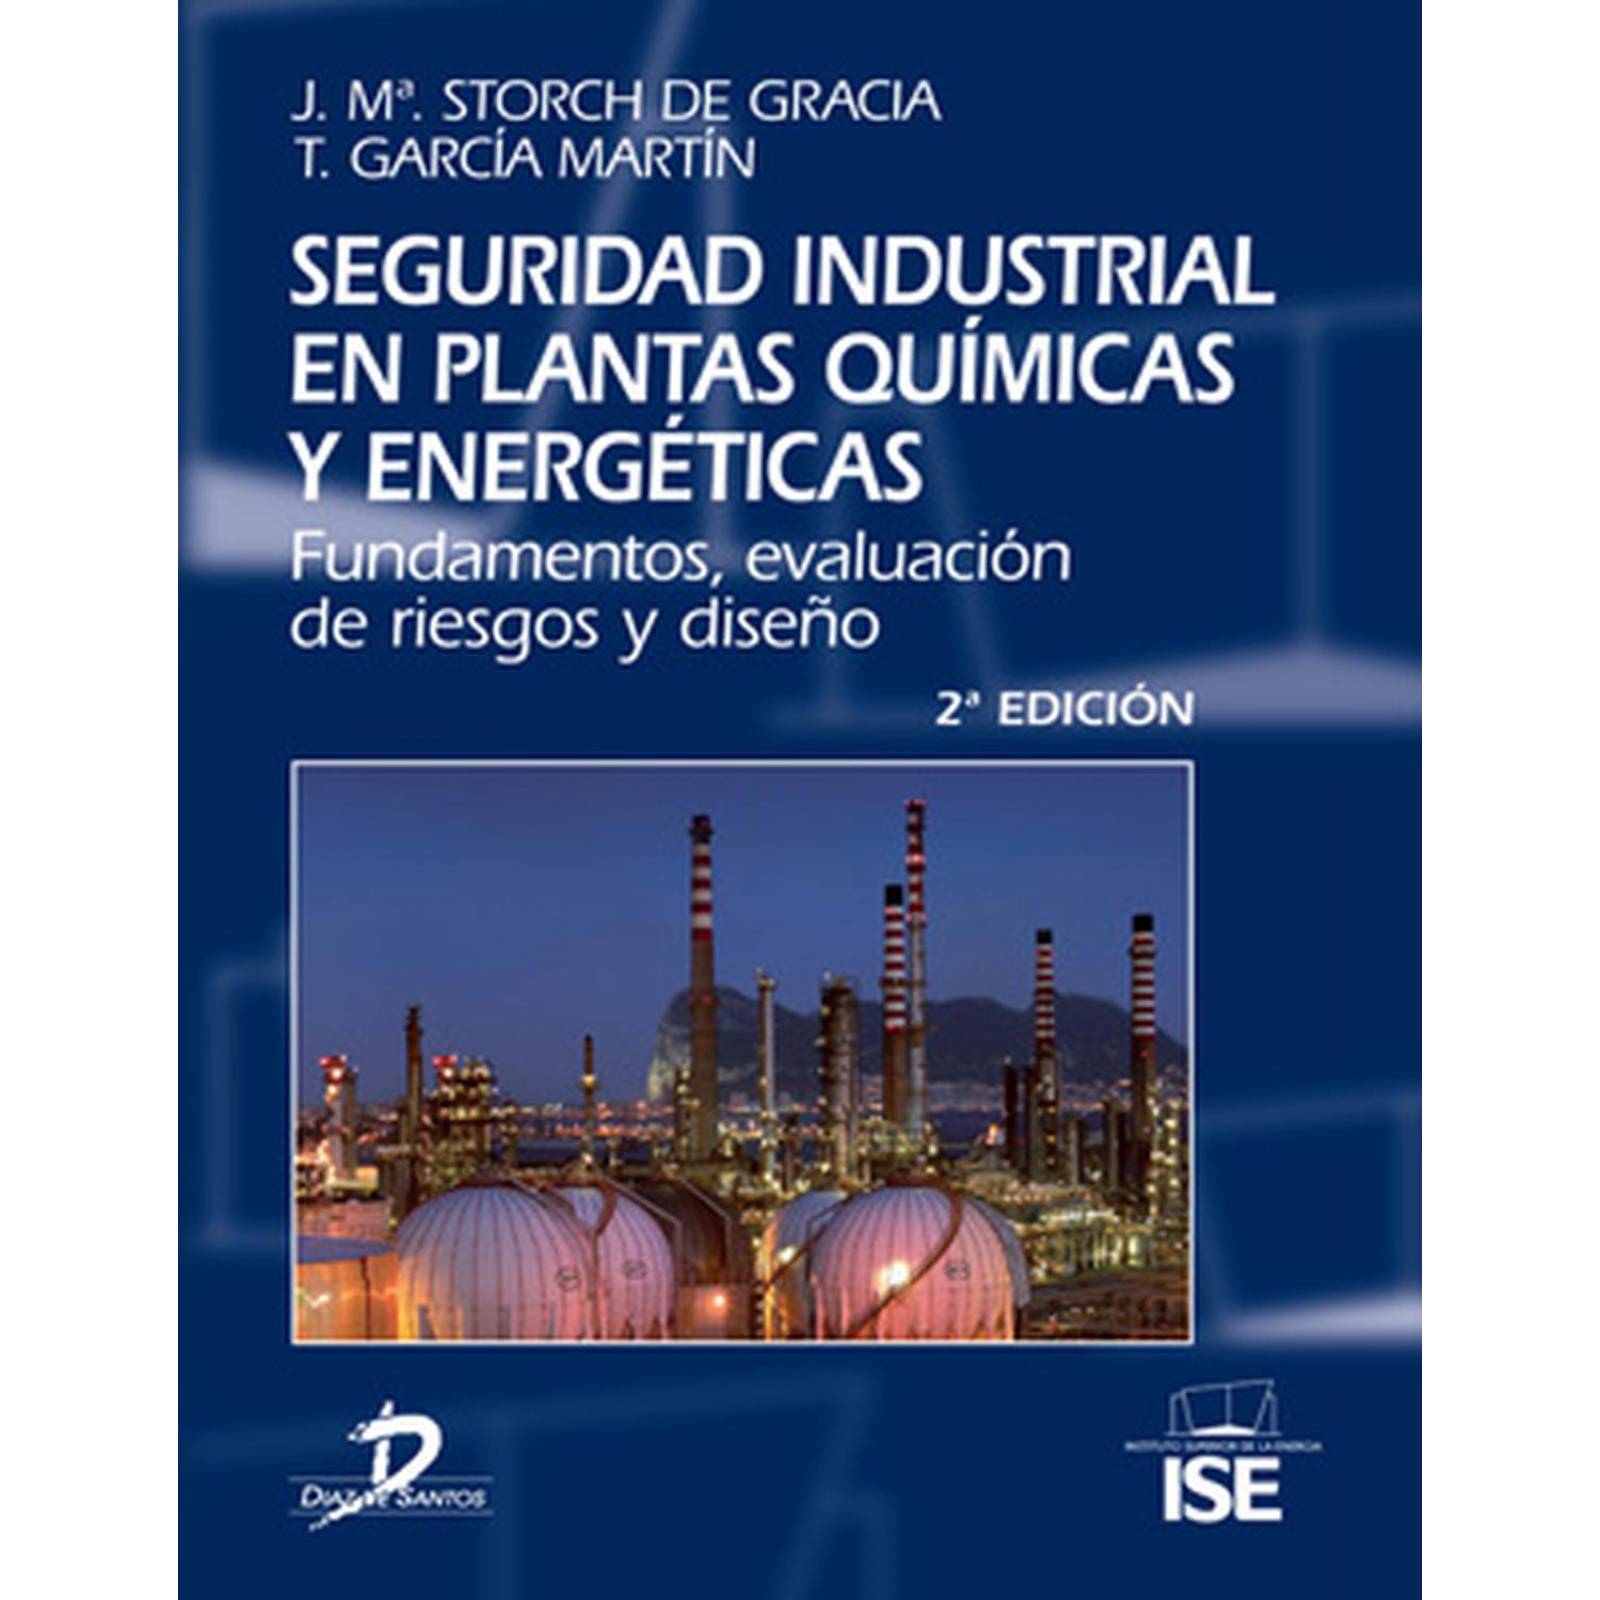 Seguridad industrial en plantas químicas y energéticas. 2 Ed. 